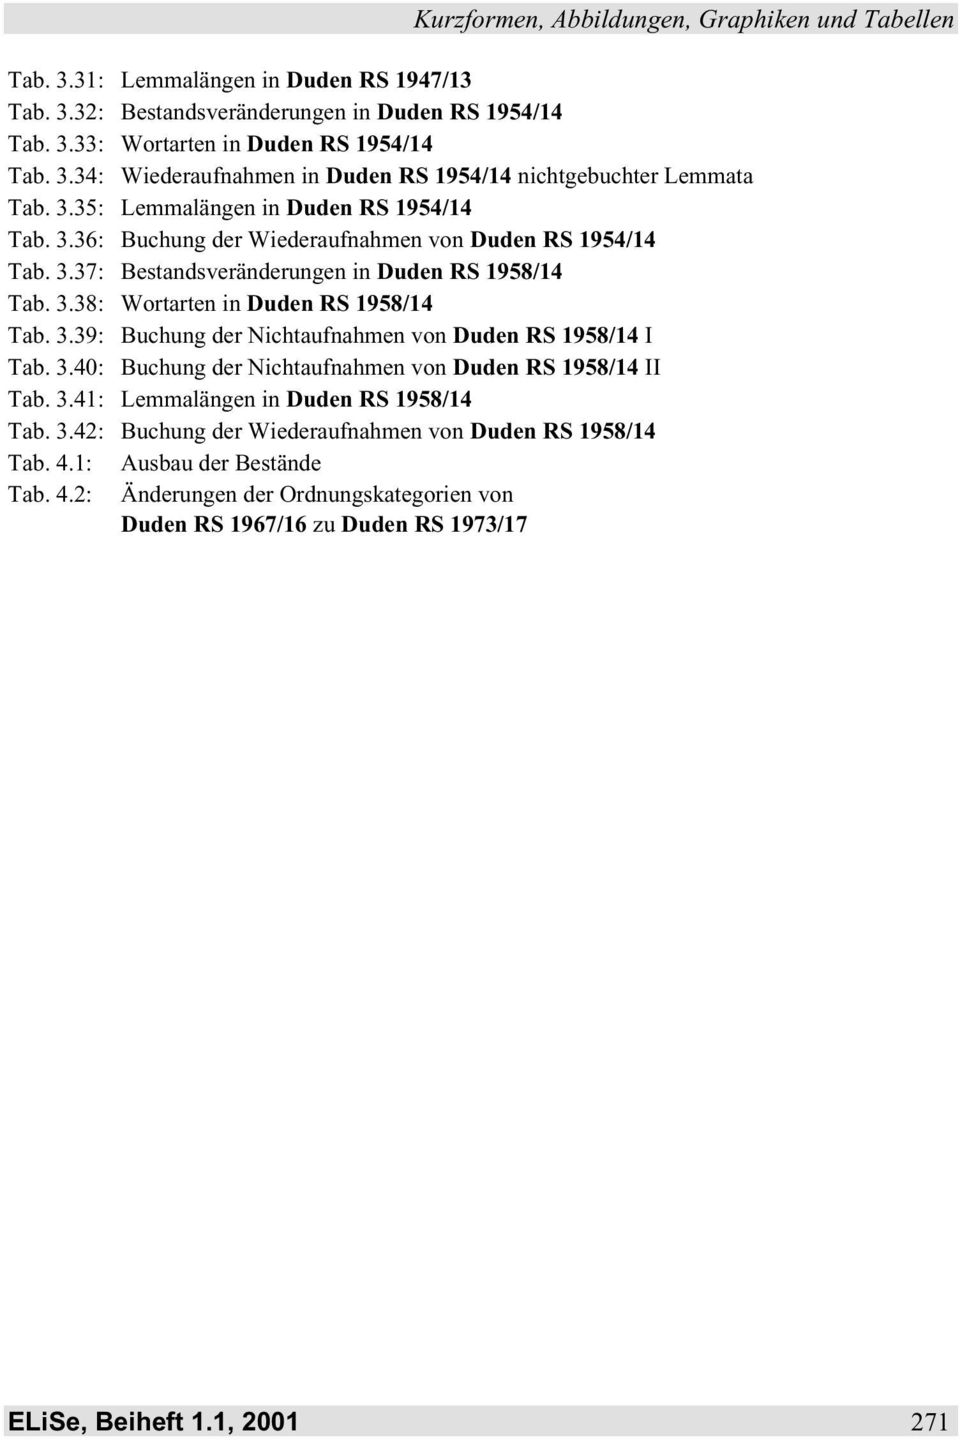 3.40: Buchung der Nichtaufnahmen von Duden RS 1958/14 II Tab. 3.41: Lemmalängen in Duden RS 1958/14 Tab. 3.42: Buchung der Wiederaufnahmen von Duden RS 1958/14 Tab. 4.